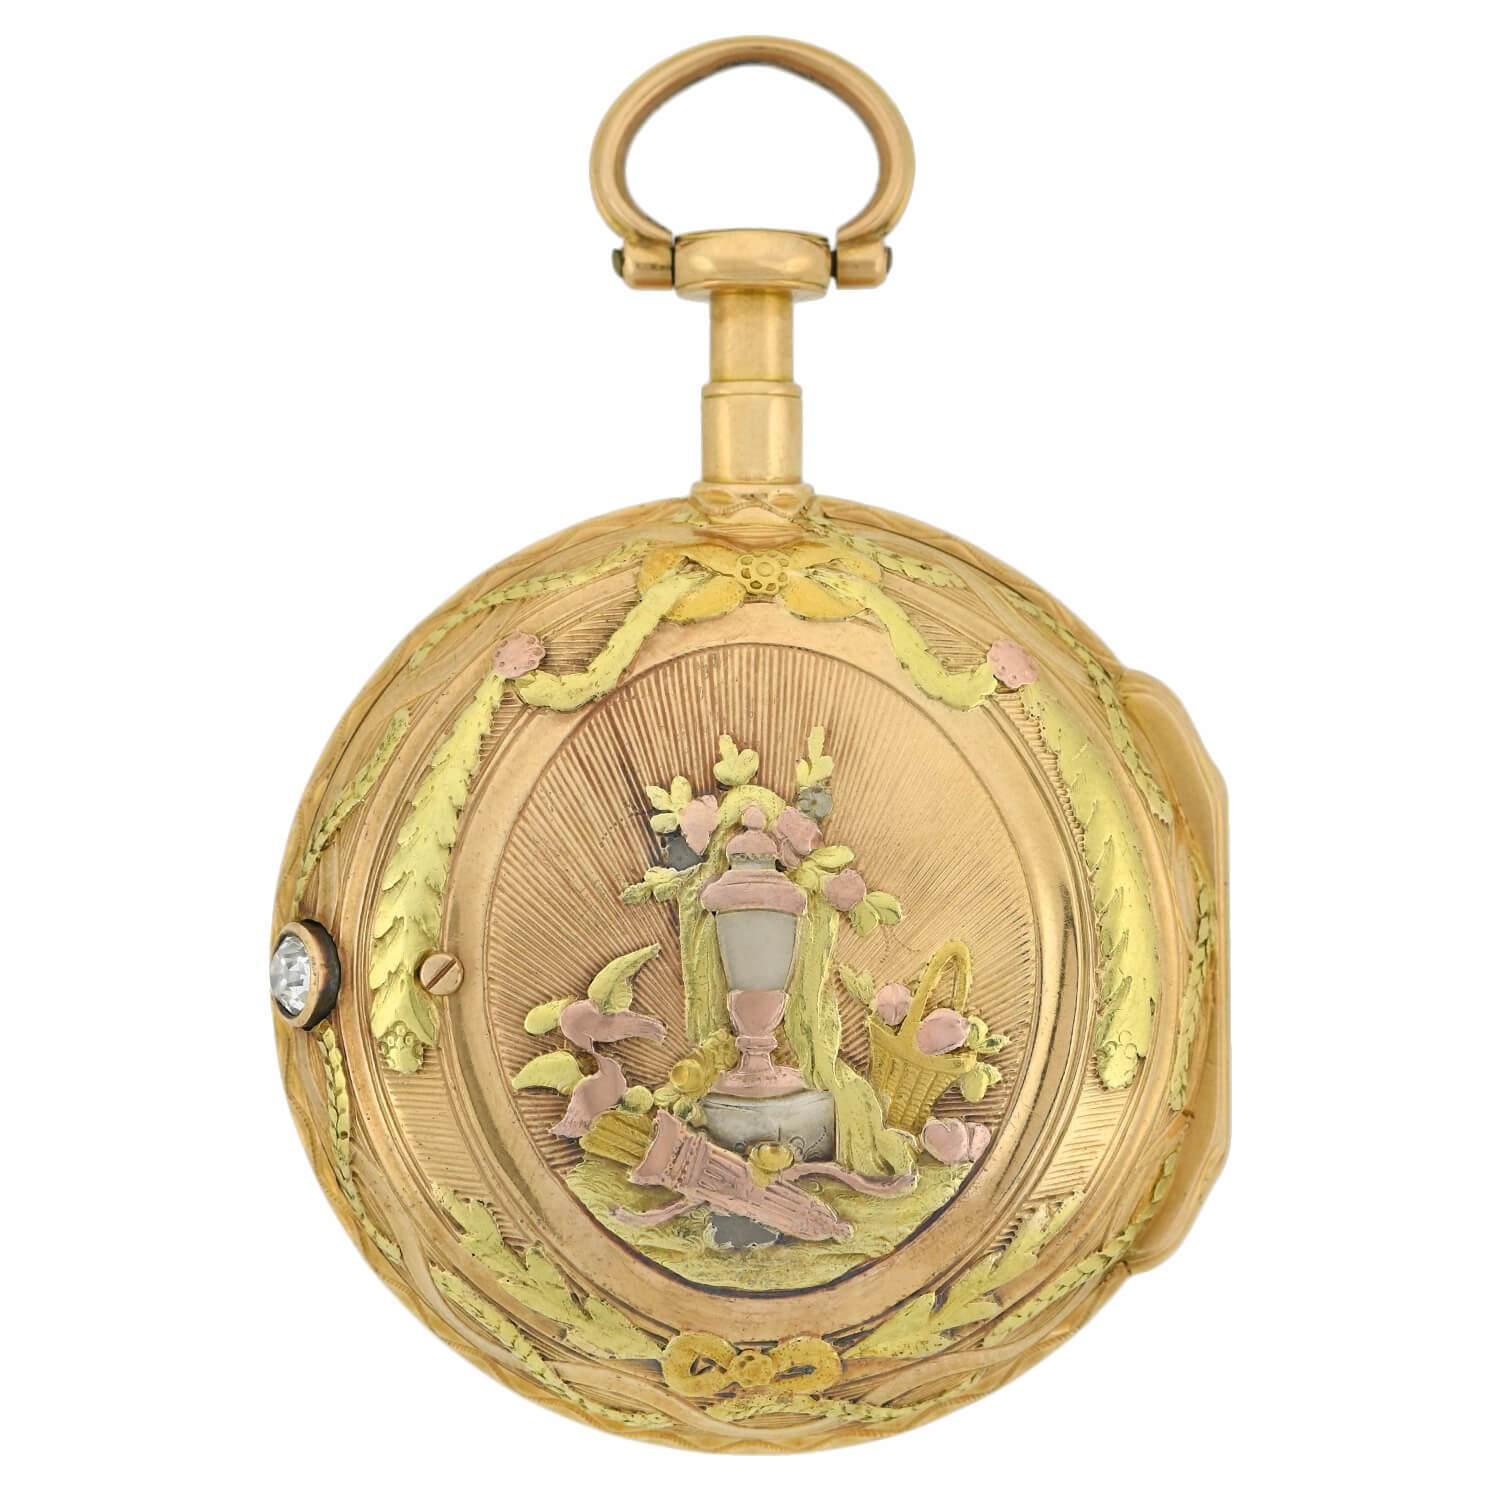 Une rare et exquise montre à gousset avec diamants en alliage, fabriquée par Honnoré Lieutaud de Marseille, France, à l'époque géorgienne (ca. 1780). Cette montre éclatante à répétition des quarts bordée d'or 18 carats est ornée d'un couvercle en